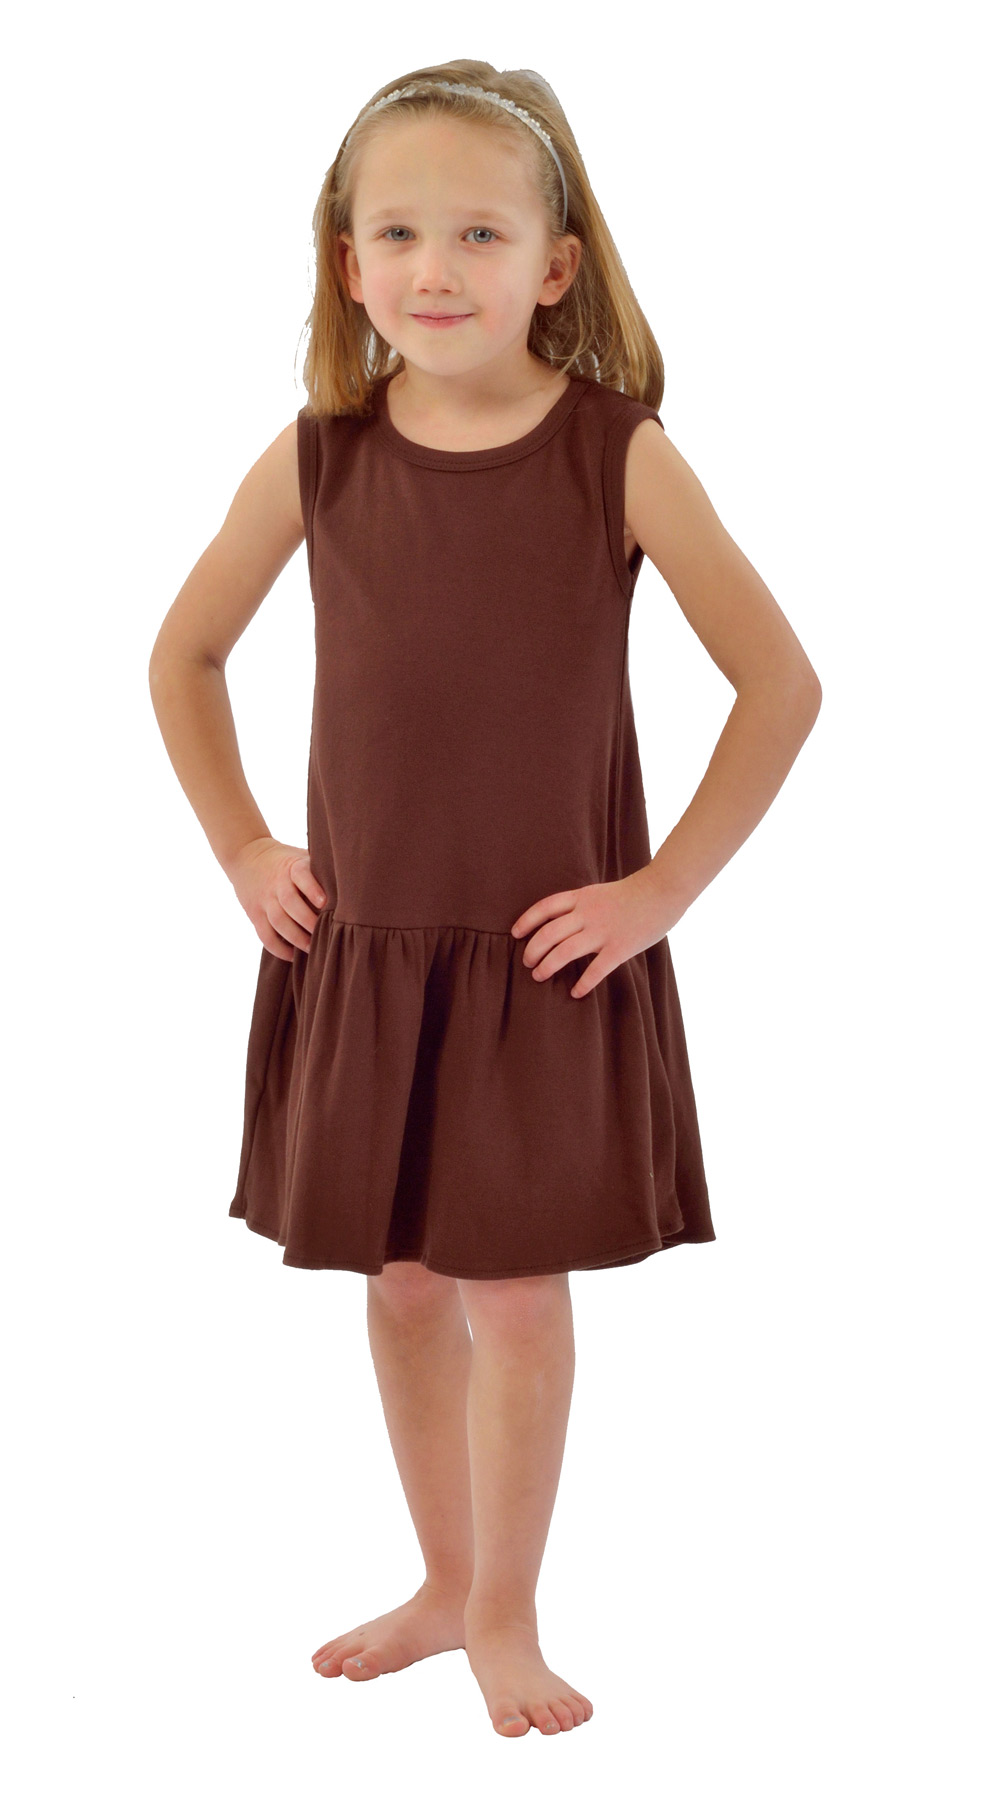 Monag 400104 - Interlock Sleeveless Pleated Dress